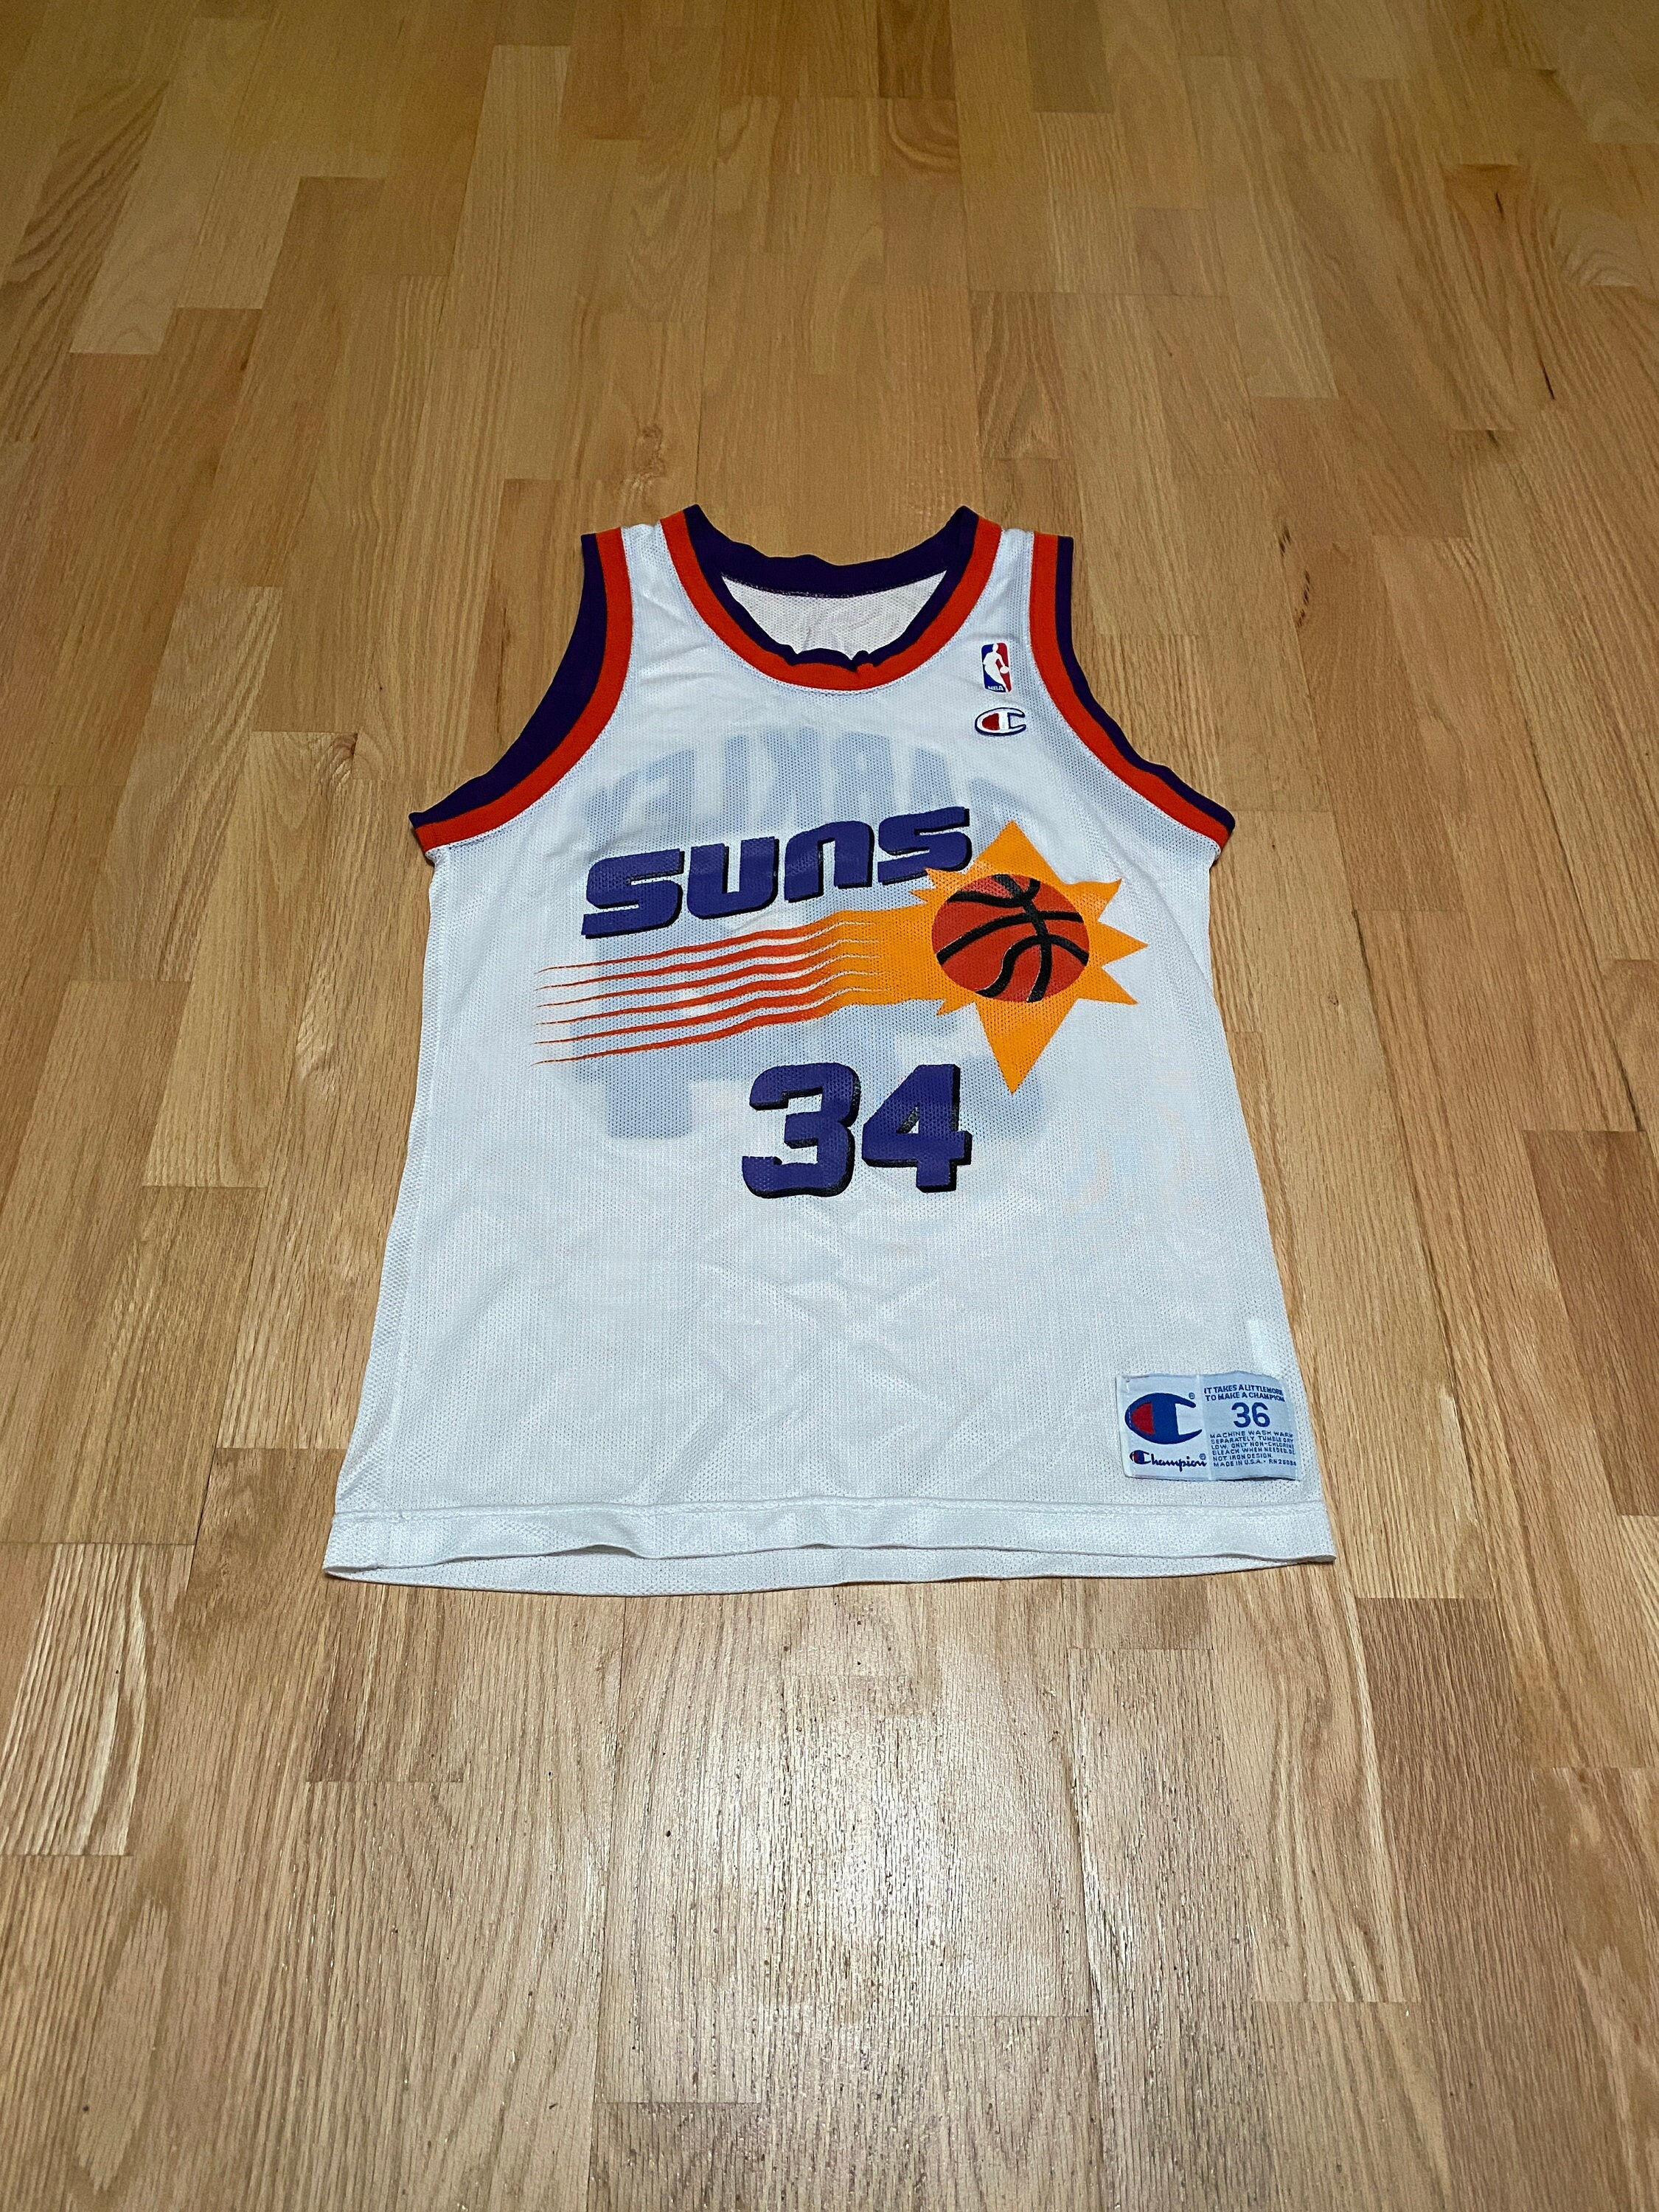 NBA Phoenix Suns Basketball Charles Barkley 34 Jersey - Champion